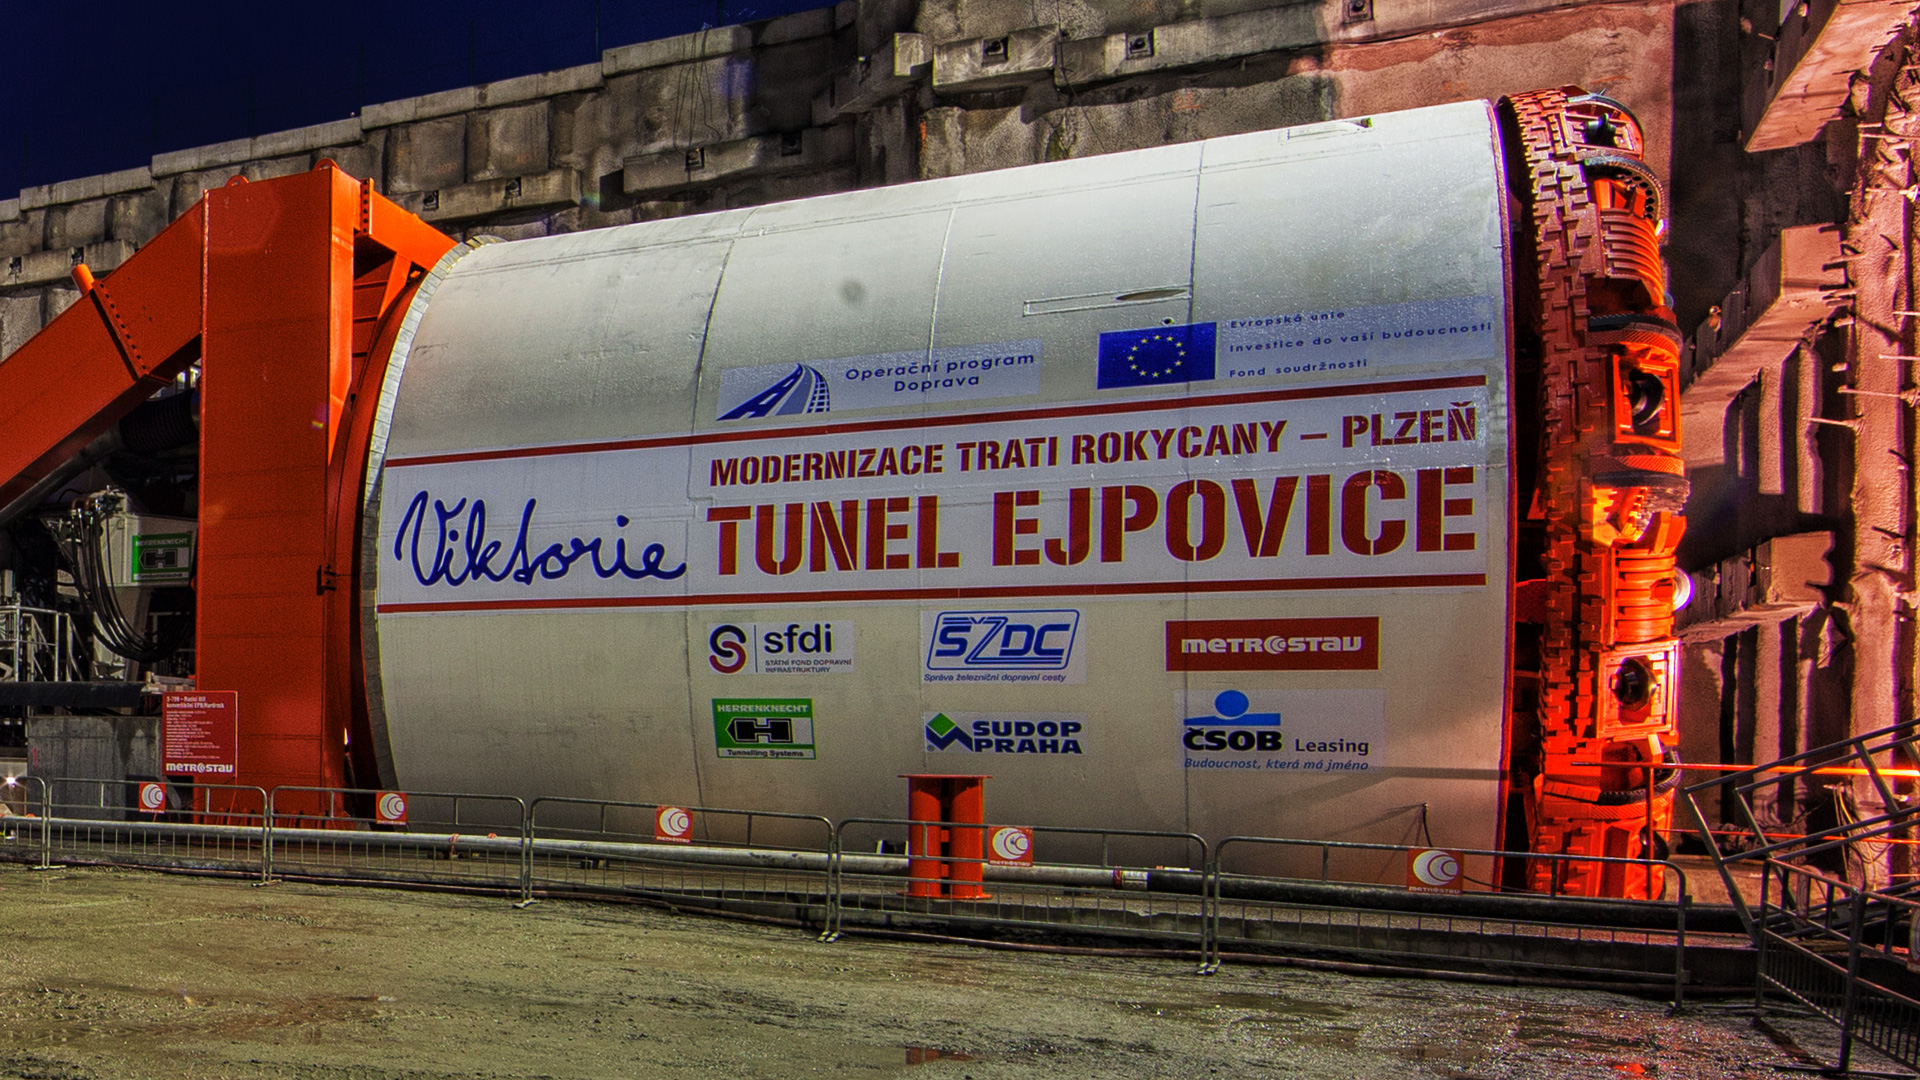 Ejpovický tunel, modernizace železniční trati Rokycany – Plzeň